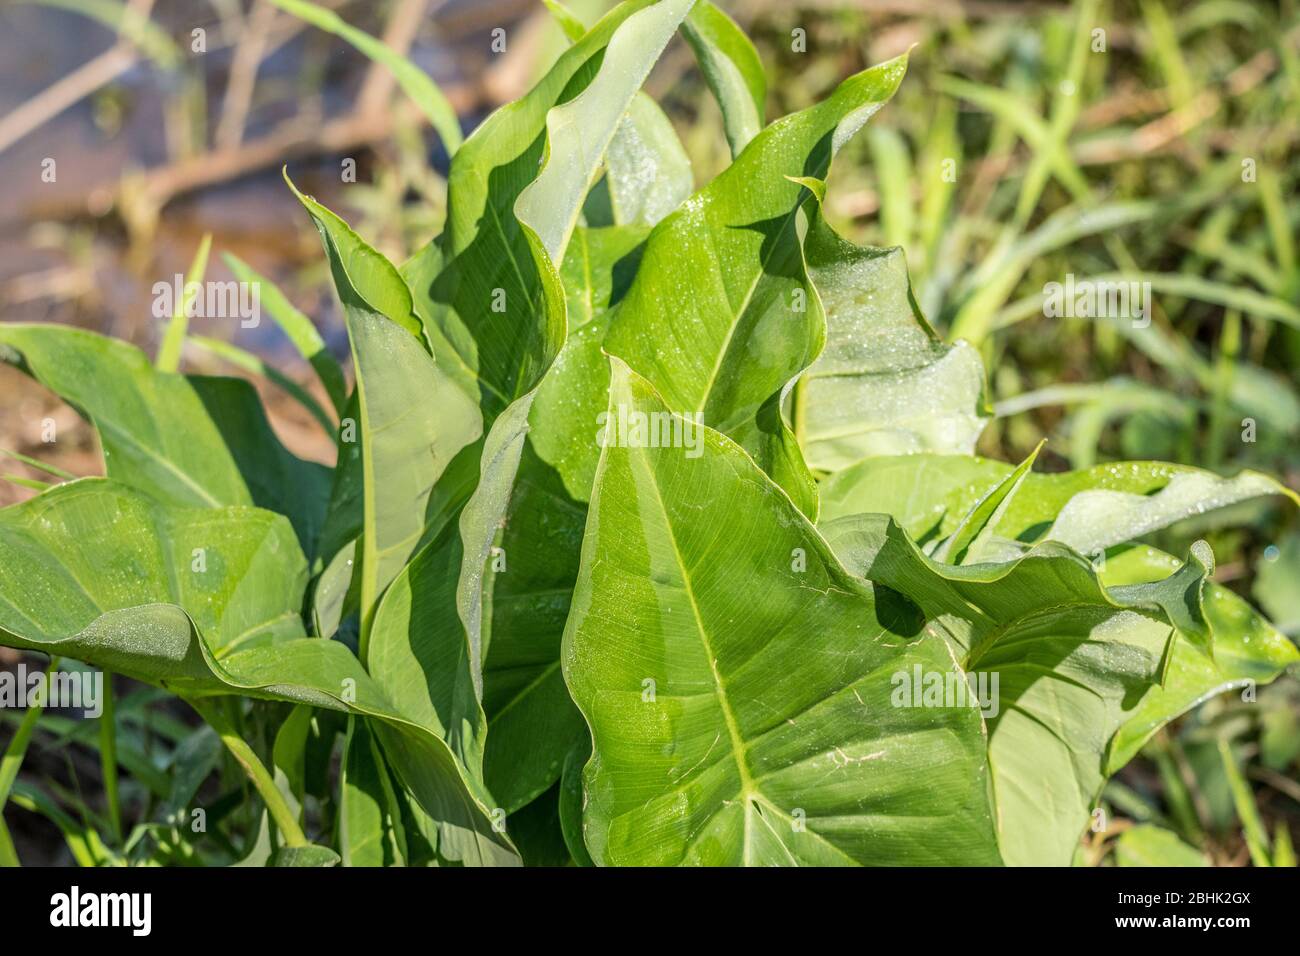 Grandi foglie appuntite di una pianta a punta di freccia che emerge dall'acqua alle zone umide in una giornata di sole in primavera Foto Stock